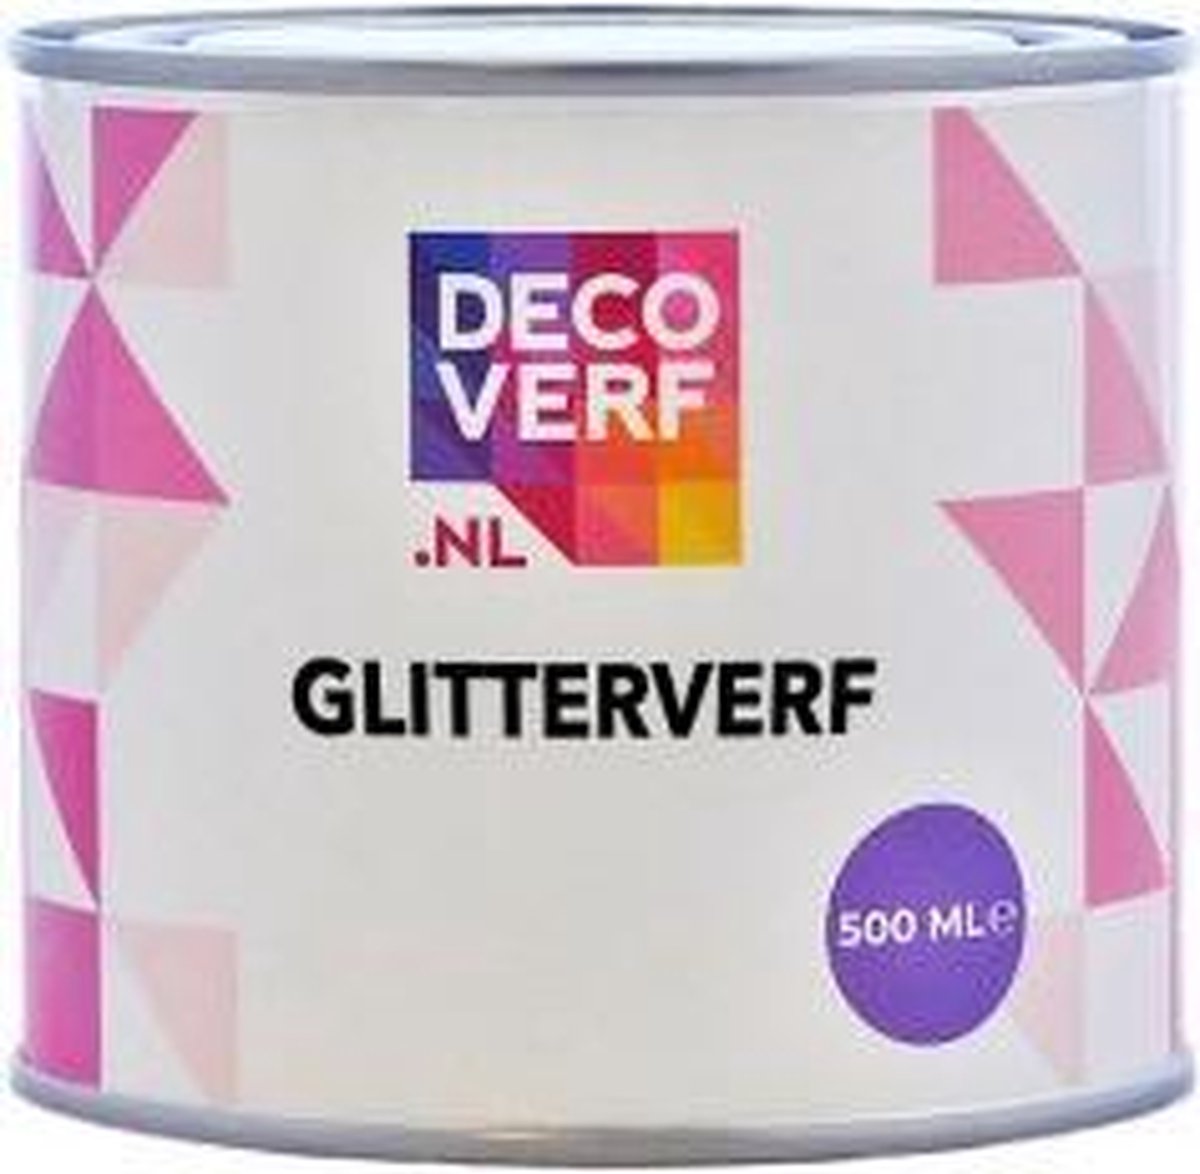 glitterverf, 500 ml | bol.com